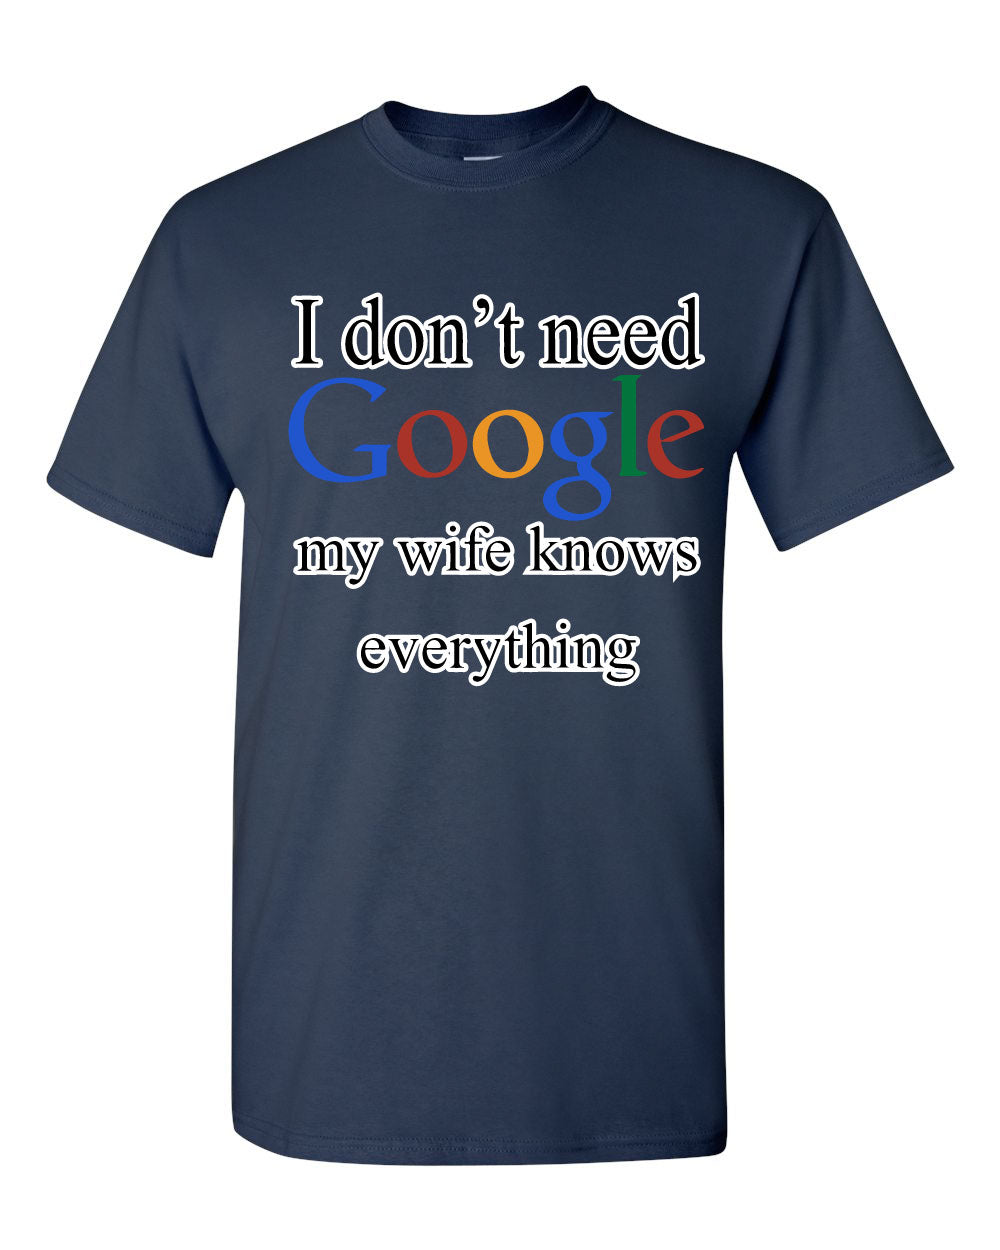 I Don't Need Google T-Shirt Funny Marriage Anniversary Tee Shirt | eBay